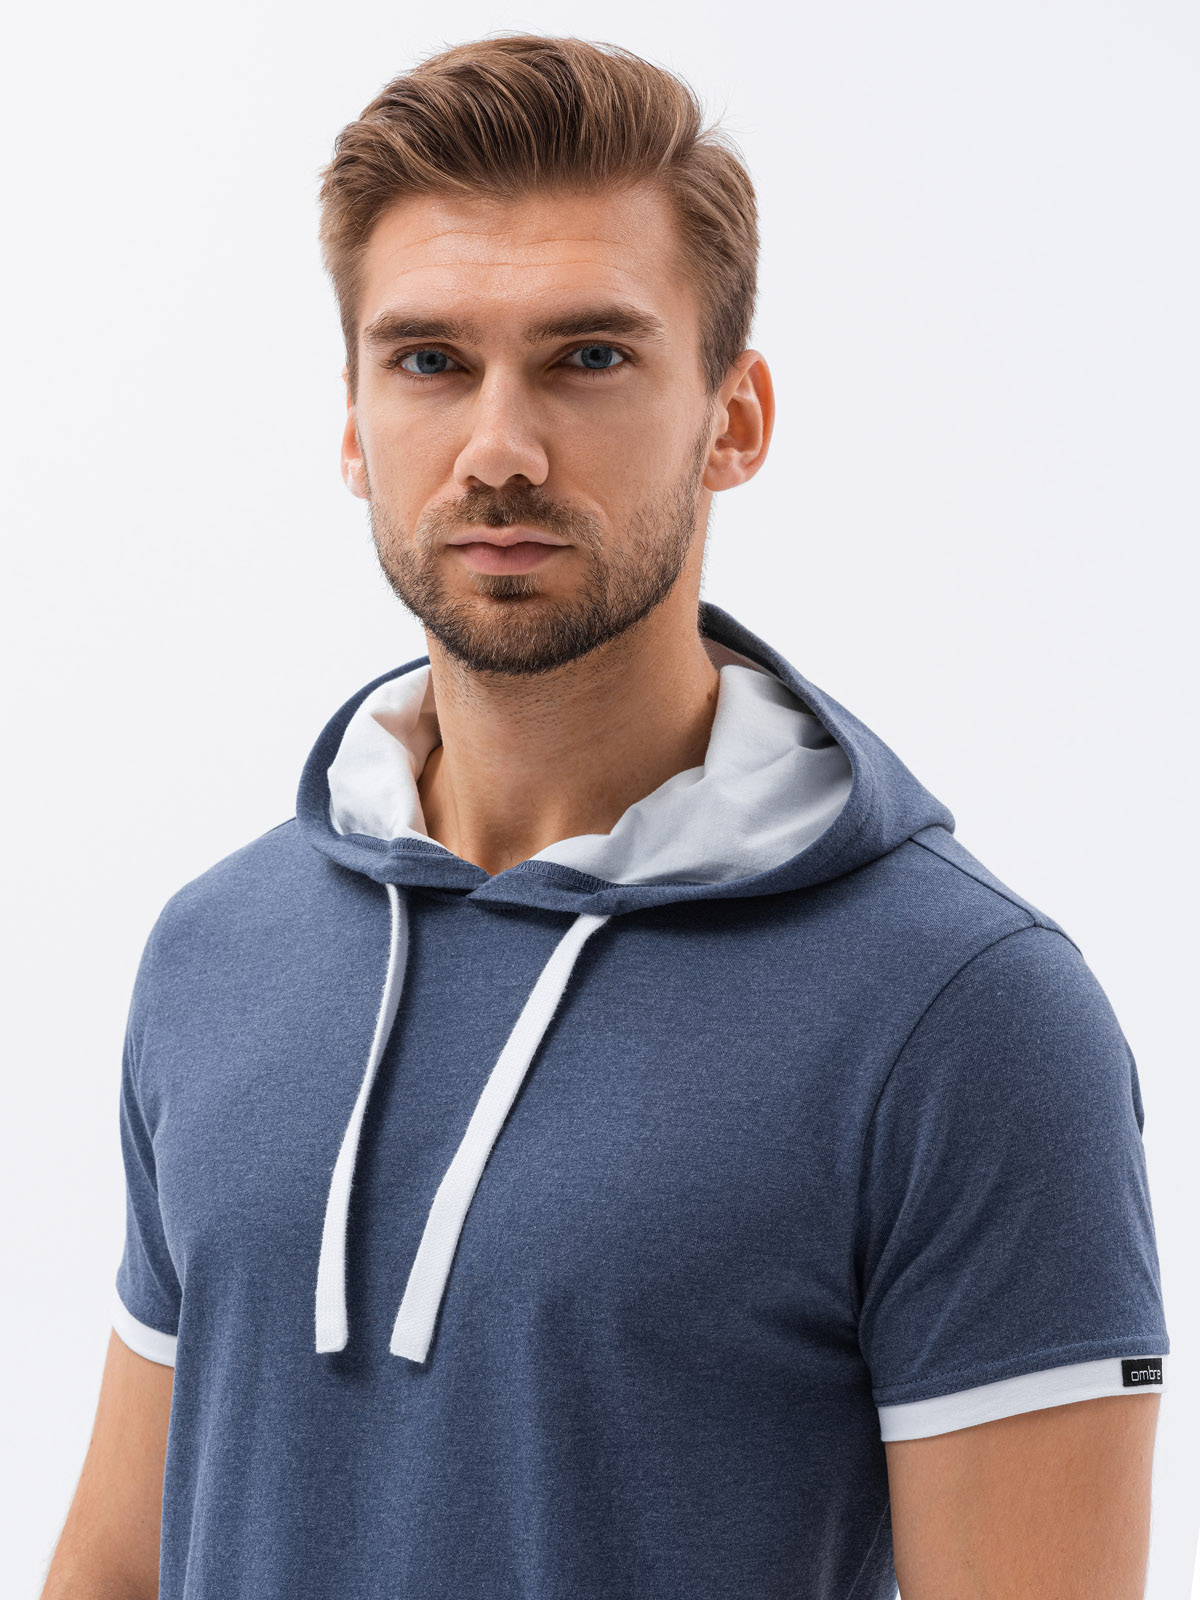 Men's plain hooded t-shirt - grey melange S1376